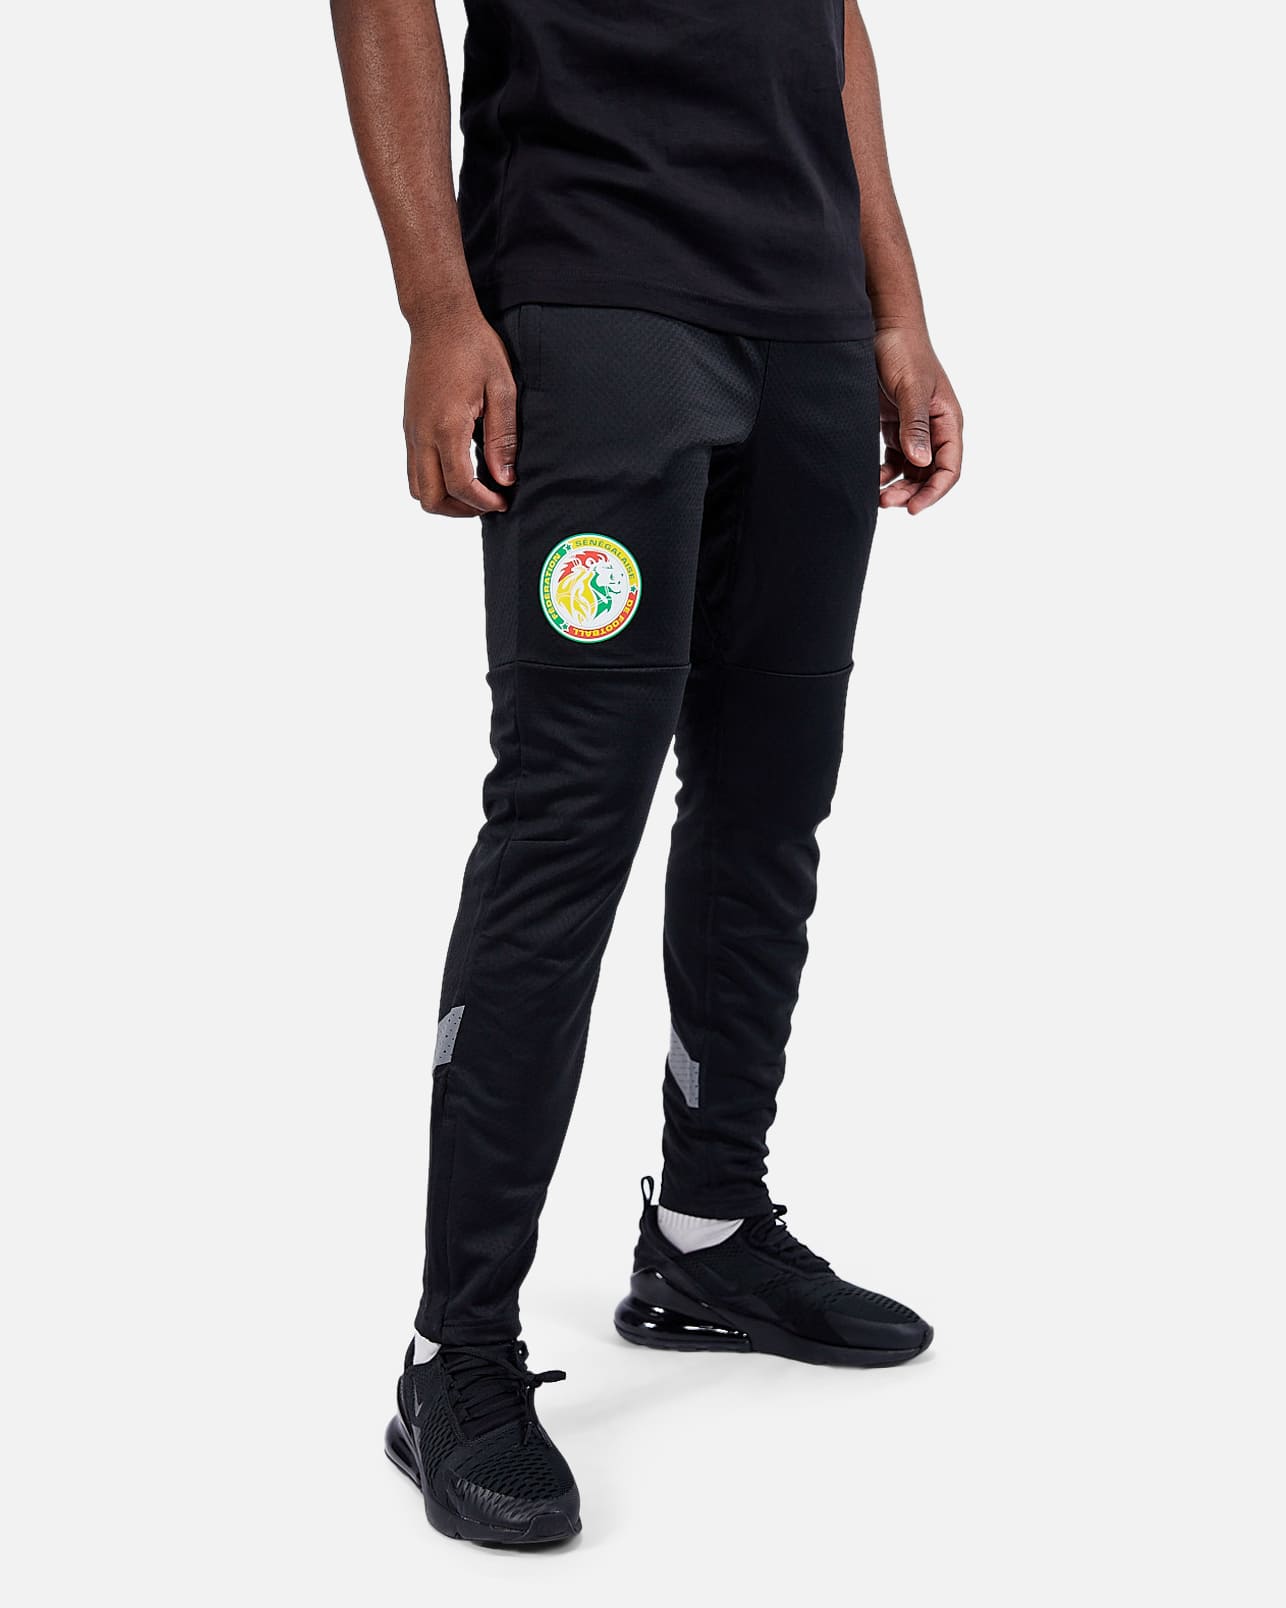 Senegal training pants 2022/2023 - Black